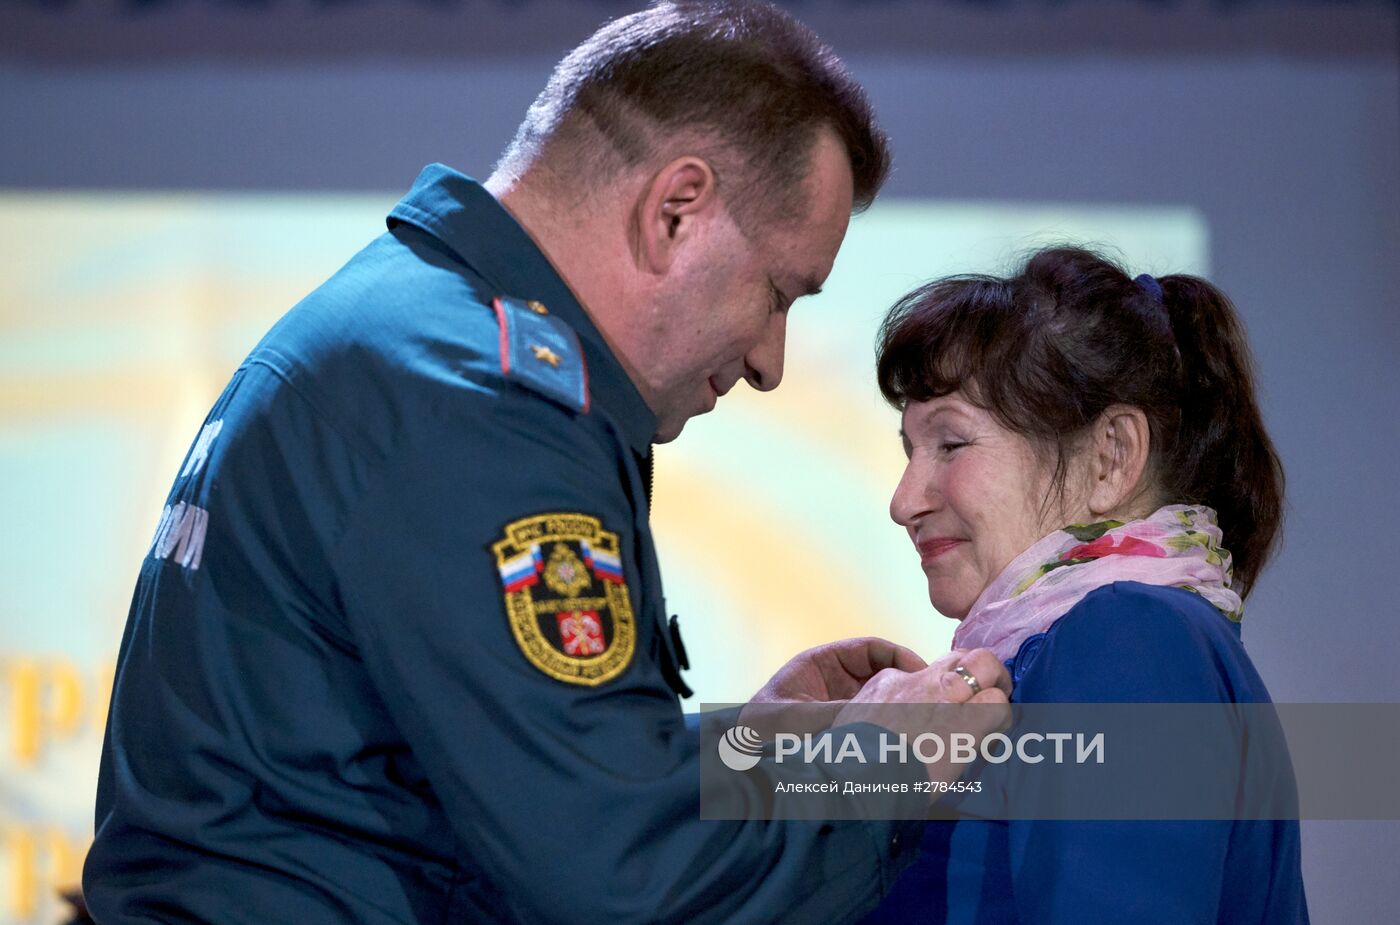 Крановщицу из Санкт-Петербурга наградили медалью "За отвагу на пожаре"